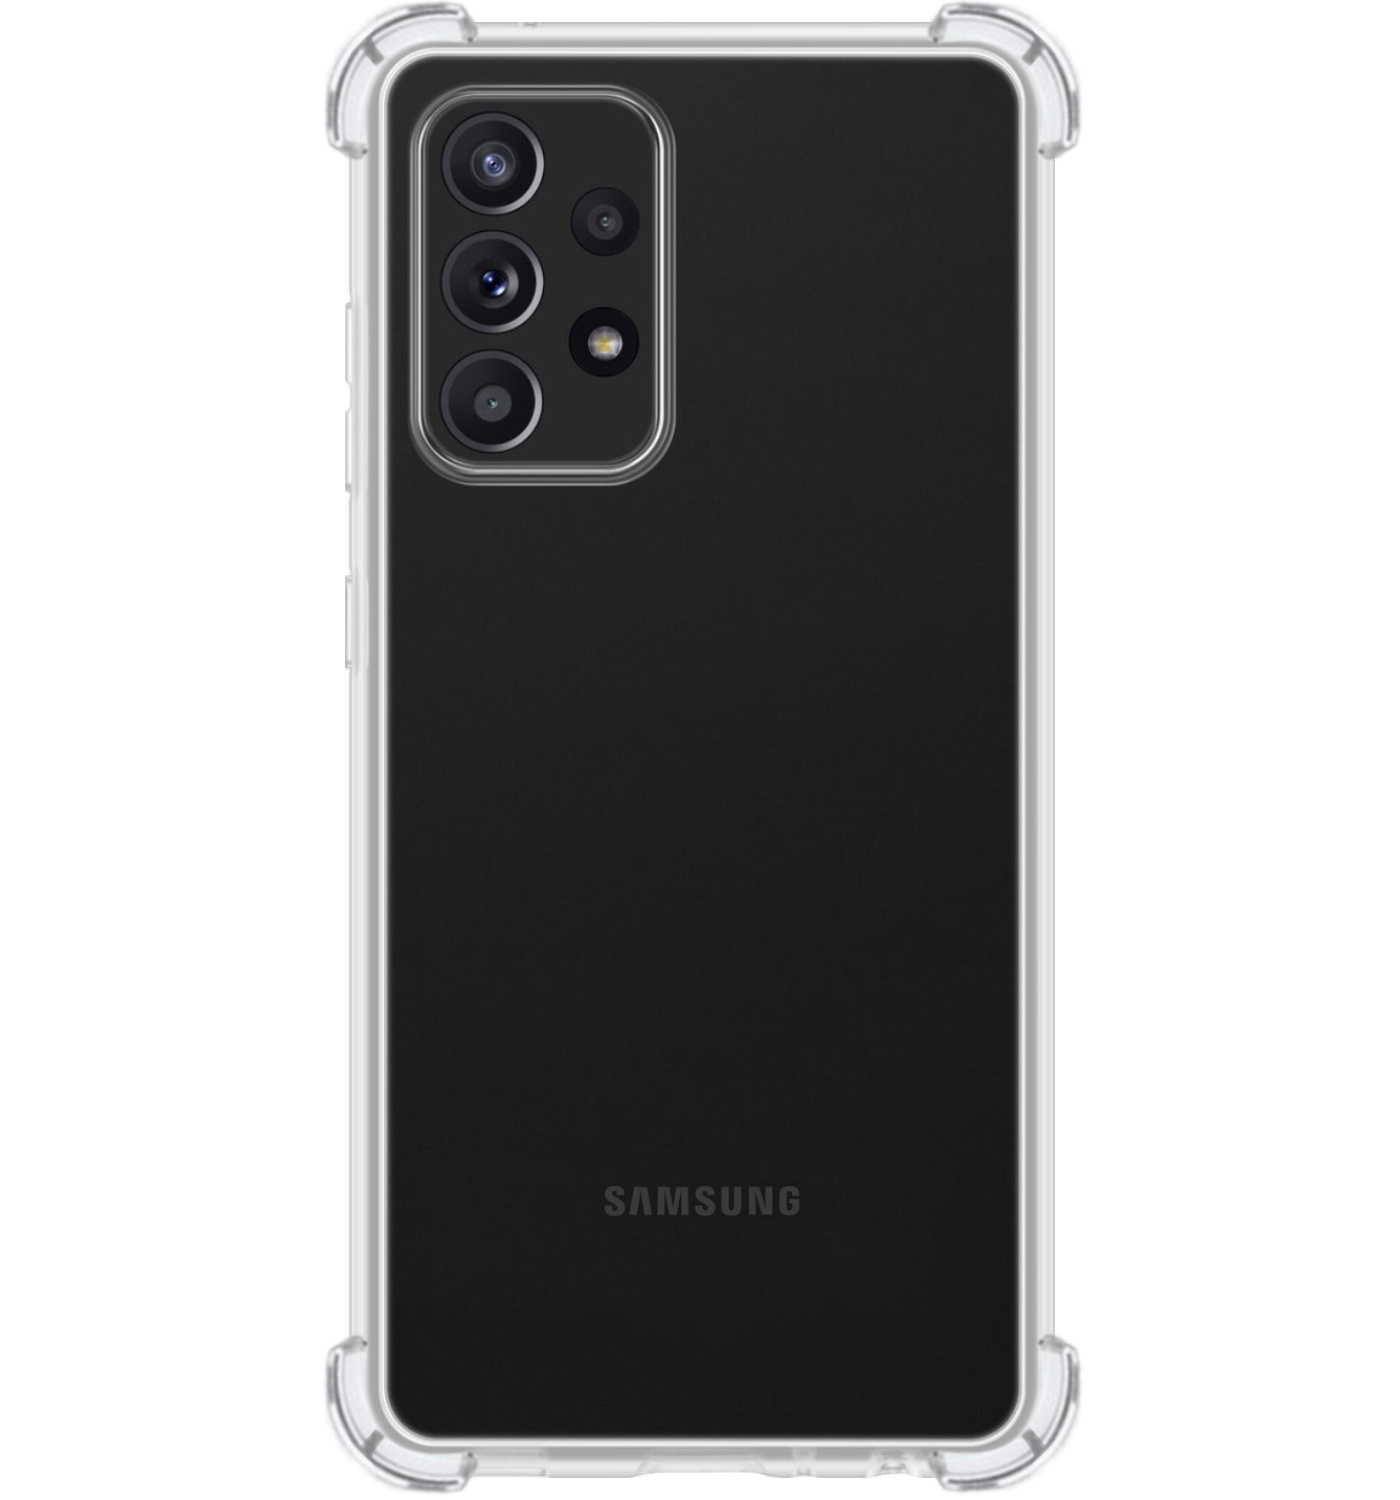 Samsung Galaxy A52 Hoesje Shock Proof Zwart - Samsung Galaxy A52 Hoesje Zwart Case Shock - Samsung Galaxy A52 Zwart Shock Proof Back Case